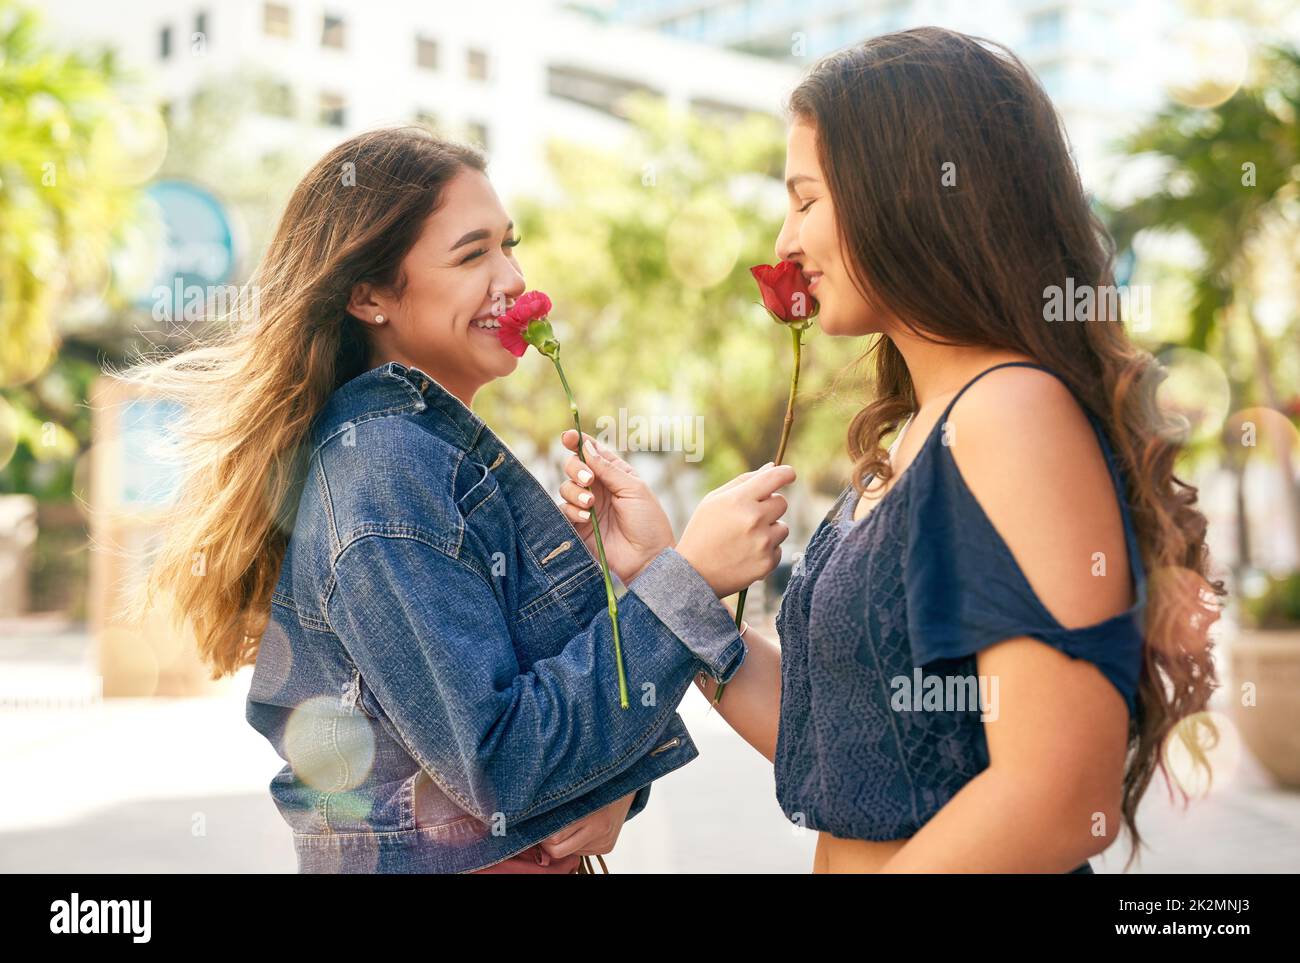 Tu la mia persona preferita in tutto il mondo. Scatto corto di due migliori amici femminili che odorano le rose nella città. Foto Stock